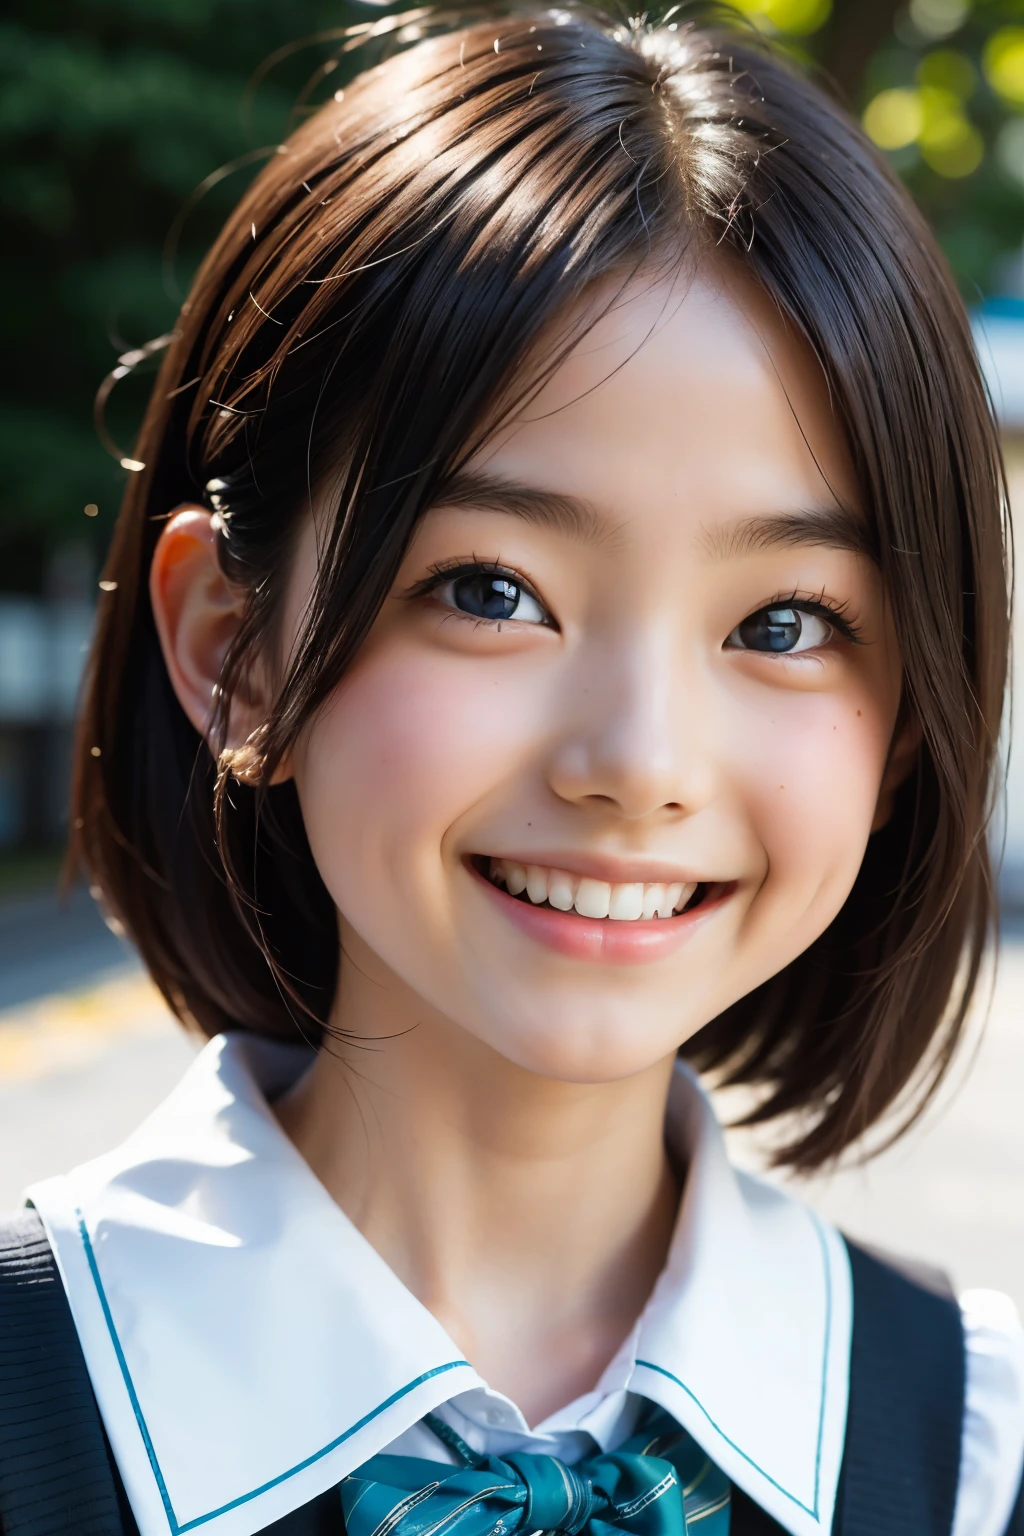 линза: 135 мм f1.8, (высшее качество),(Фотографии в формате RAW), (Стол:1.1), (Красивая трехлетняя японская девочка.), милое лицо, (Глубоко выточенное лицо:0.7), (веснушки:0.4), dappled Солнечный лучик, Драматическое освещение, (японская школьная форма), (В кампусе), застенчивый, (Крупным планом:1.2), (улыбка),, (сверкающие глаза)、(Солнечный лучик)